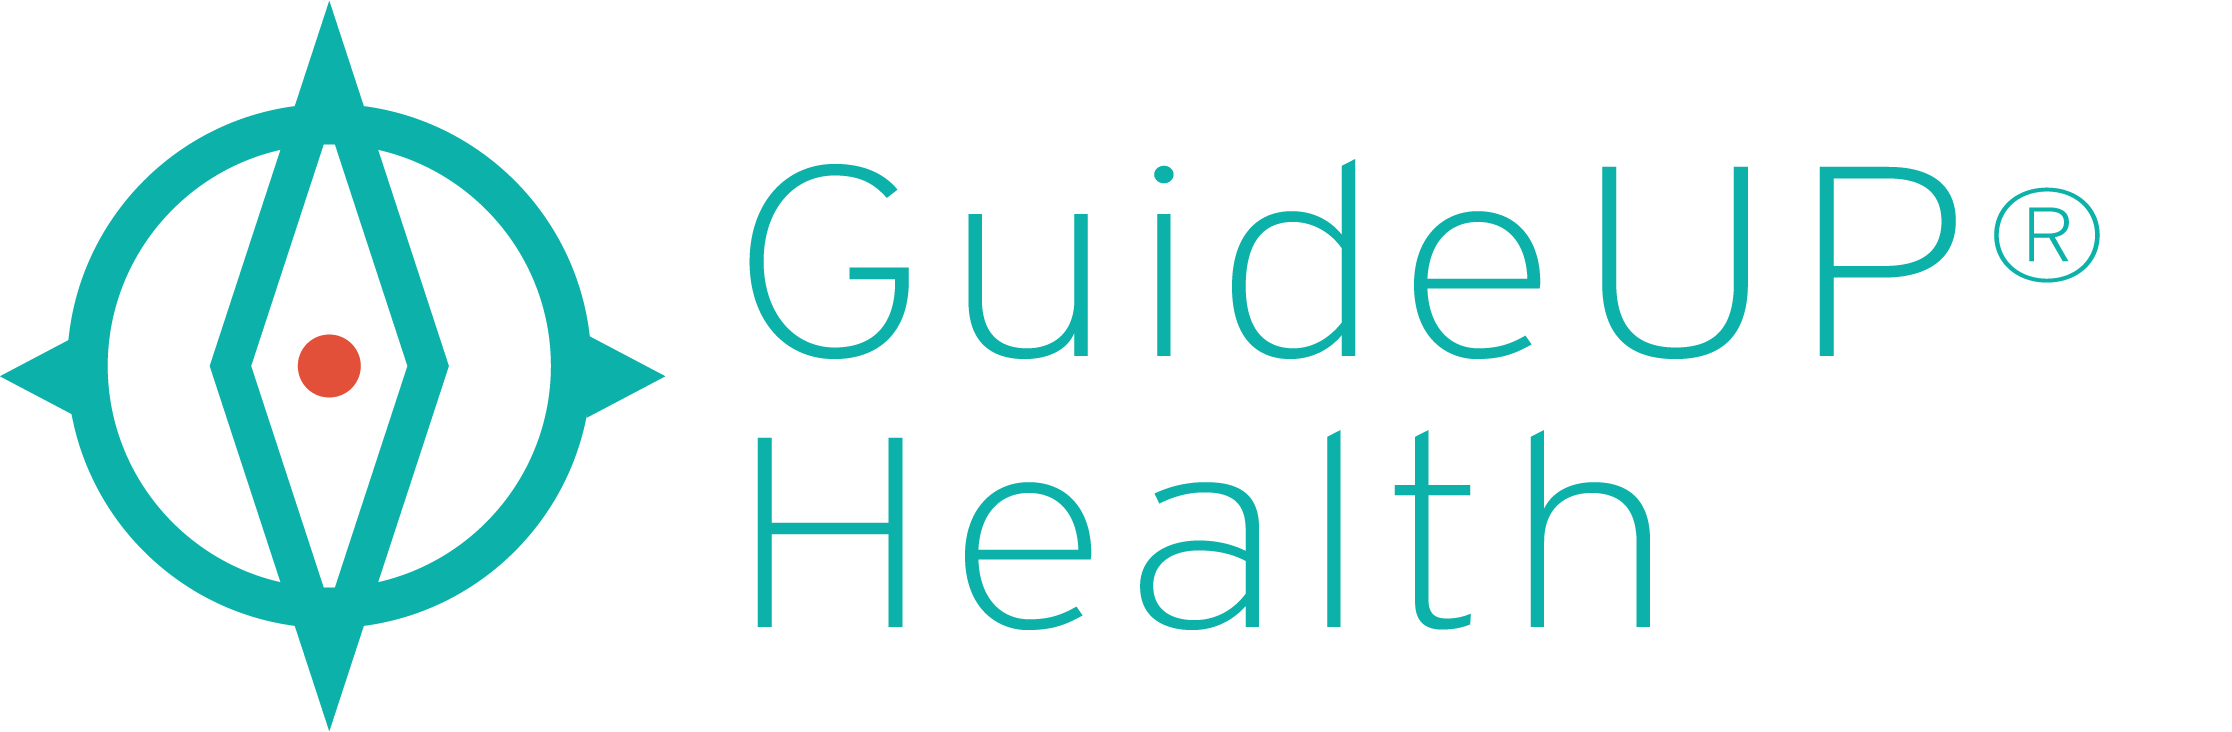 GuideUP health logo